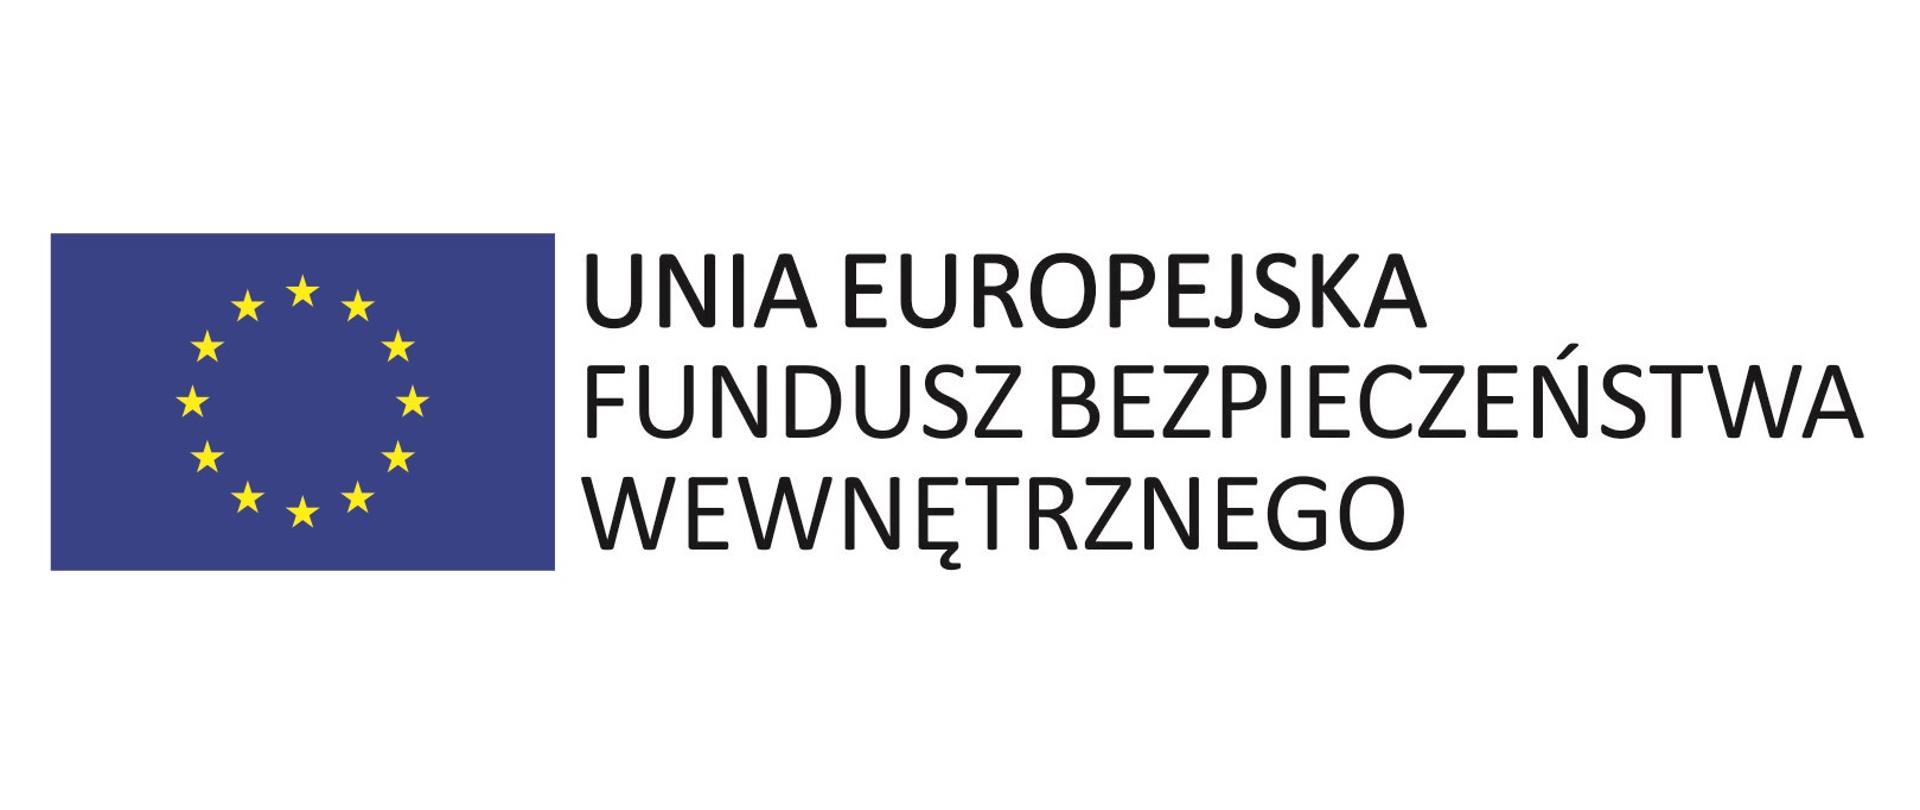 Logo Unia Europejska Fundusz Bezpieczeństwa Wewnętrznego.